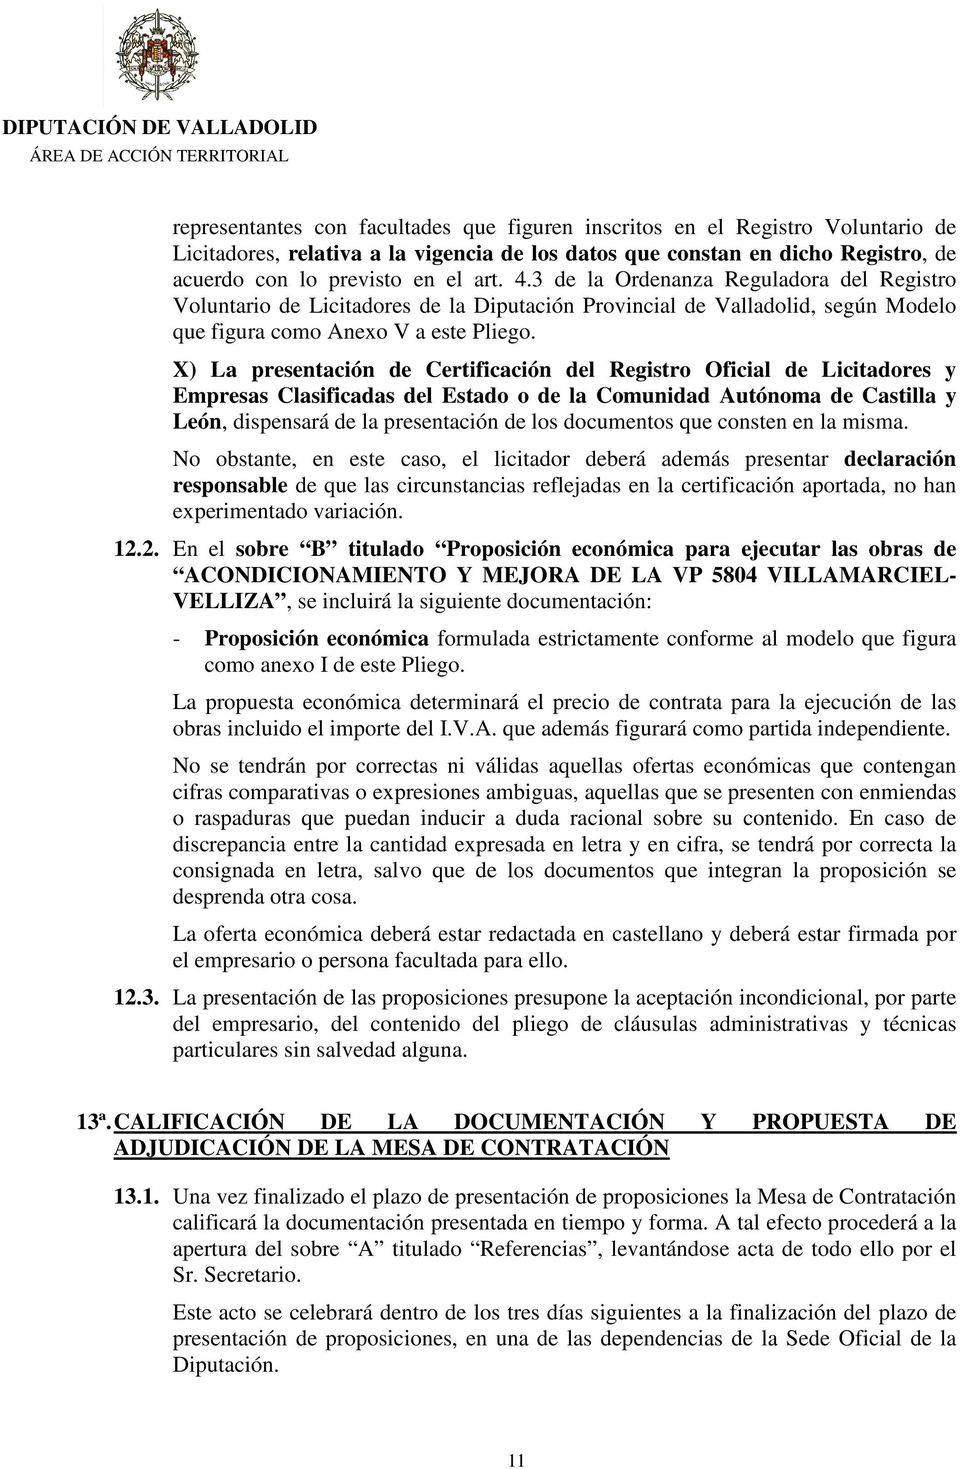 X) La presentación de Certificación del Registro Oficial de Licitadores y Empresas Clasificadas del Estado o de la Comunidad Autónoma de Castilla y León, dispensará de la presentación de los